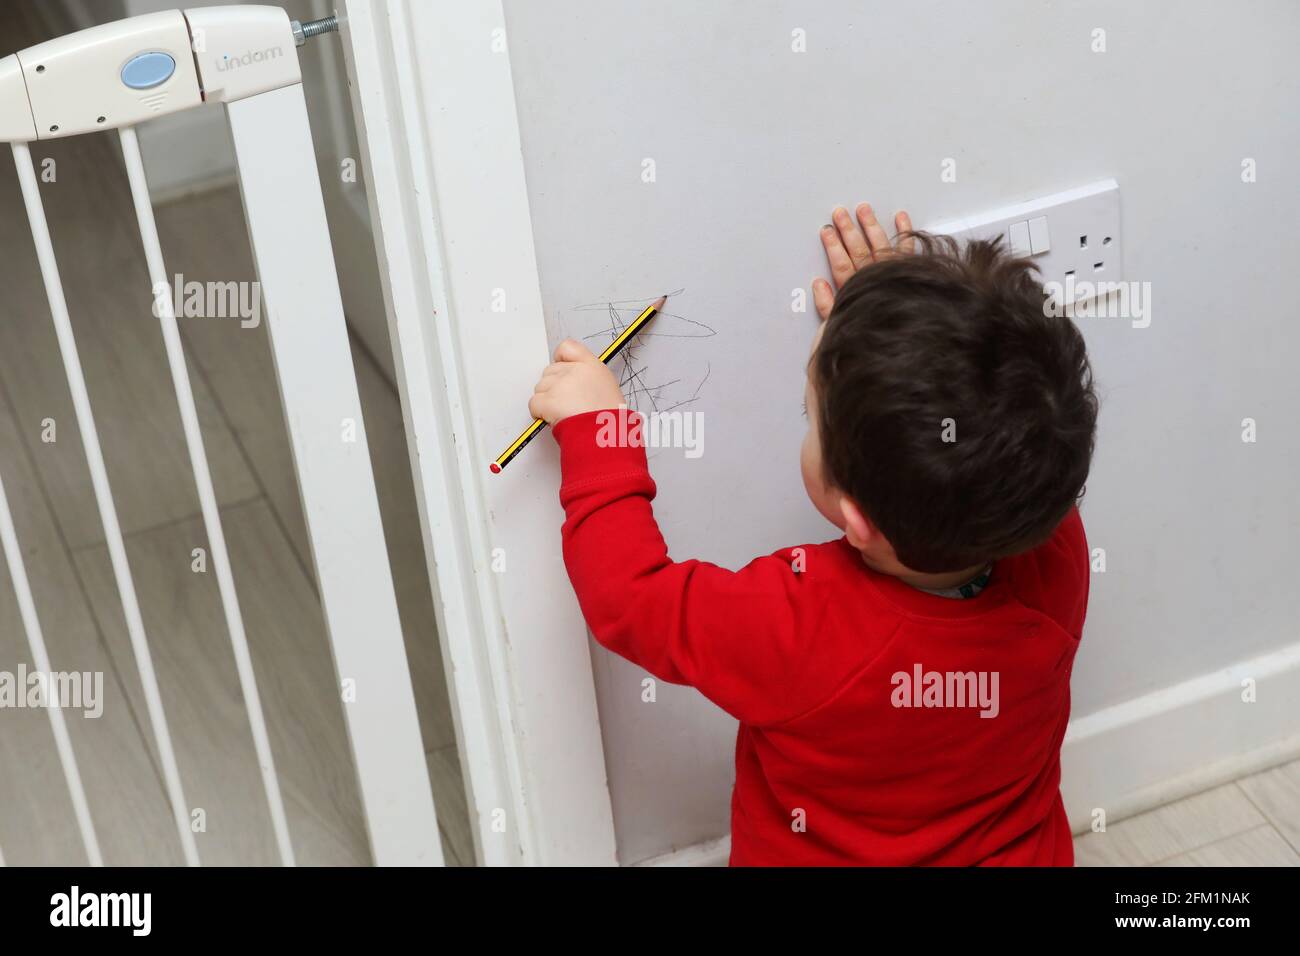 Ein kleiner Junge hat in West Sussex, Großbritannien, mit einem Bleistift an den Wänden gezeichnet. Stockfoto